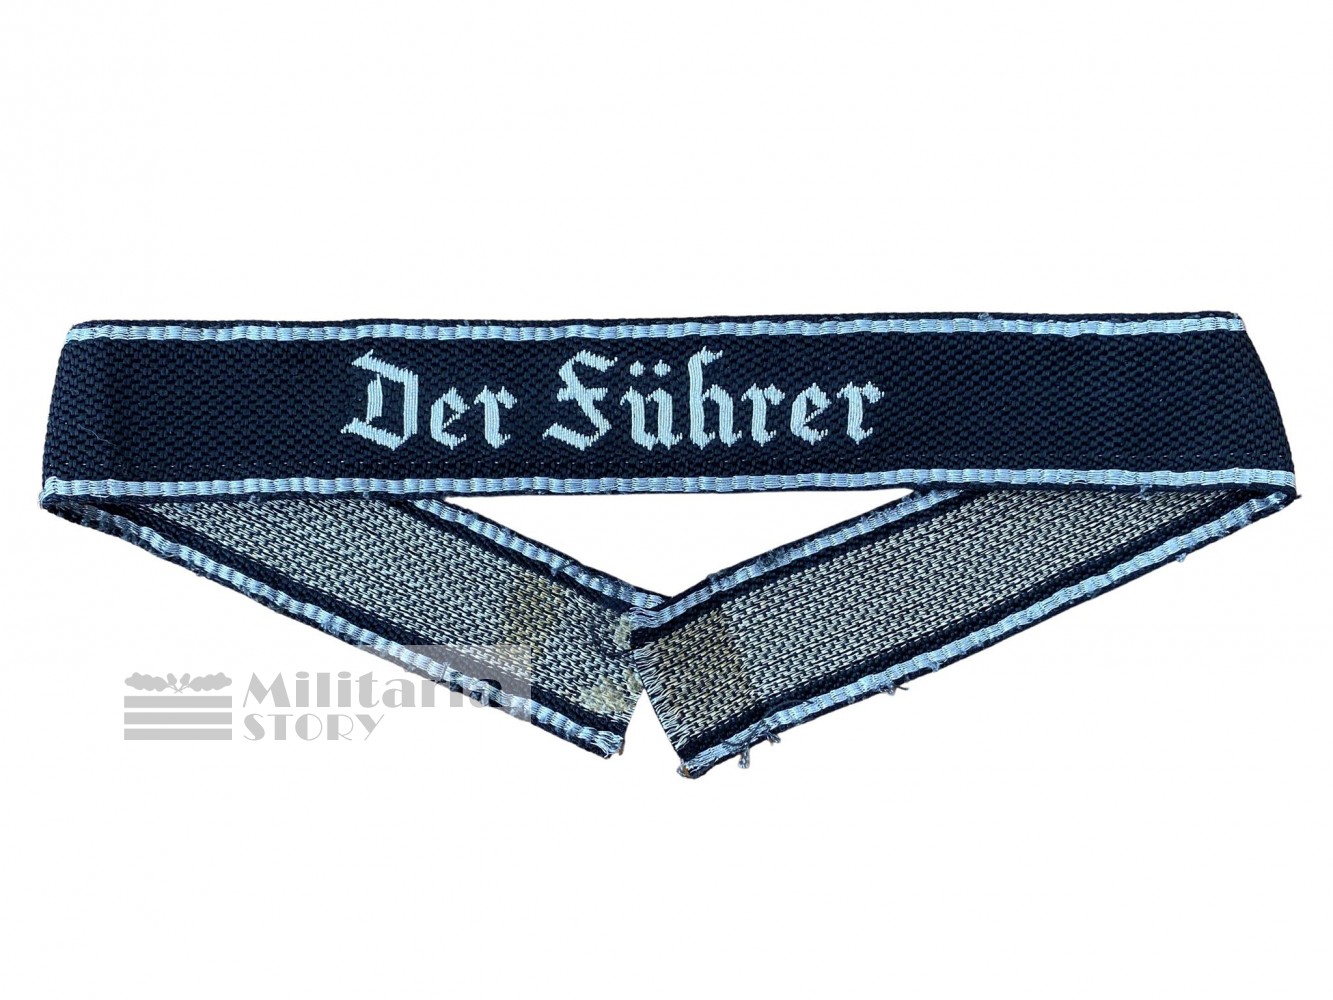 Waffen SS flatwire "Der Fuhrer" cuff title - Waffen SS flatwire "Der Fuhrer" cuff title: pre-war German Insignia